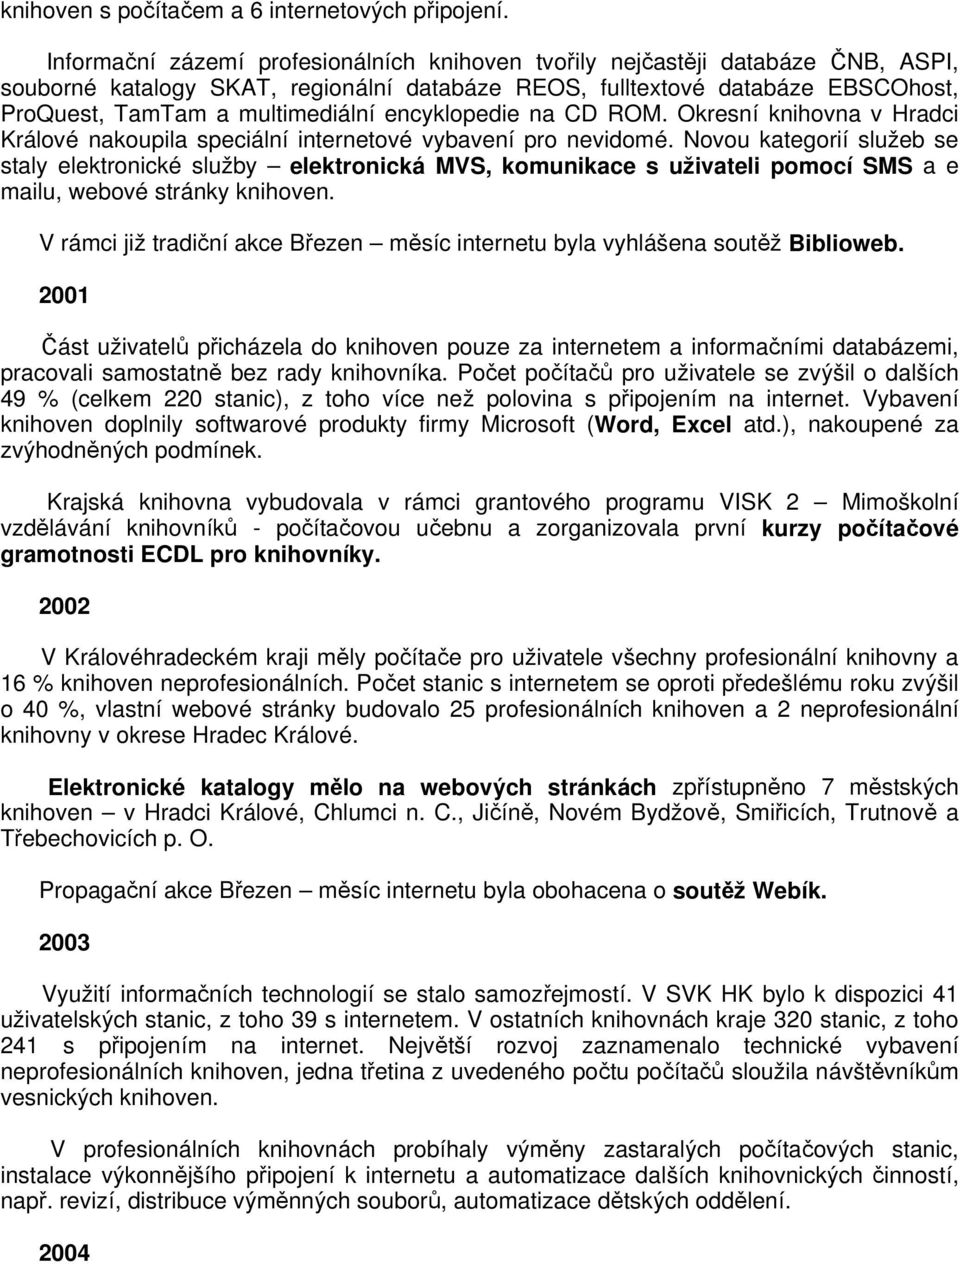 encyklopedie na CD ROM. Okresní knihovna v Hradci Králové nakoupila speciální internetové vybavení pro nevidomé.